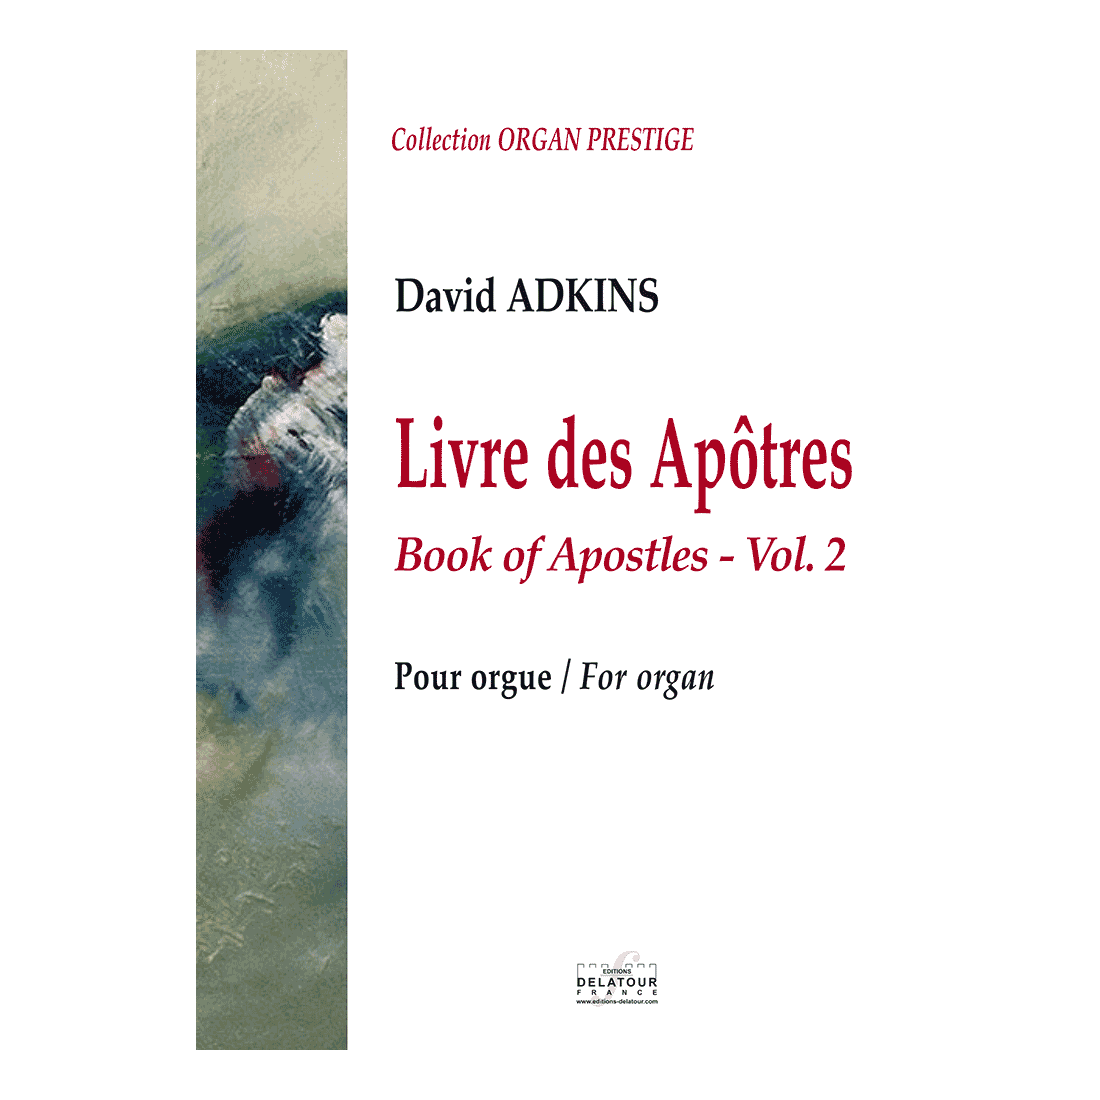 Livre des Apôtres pour orgue - Vol.2